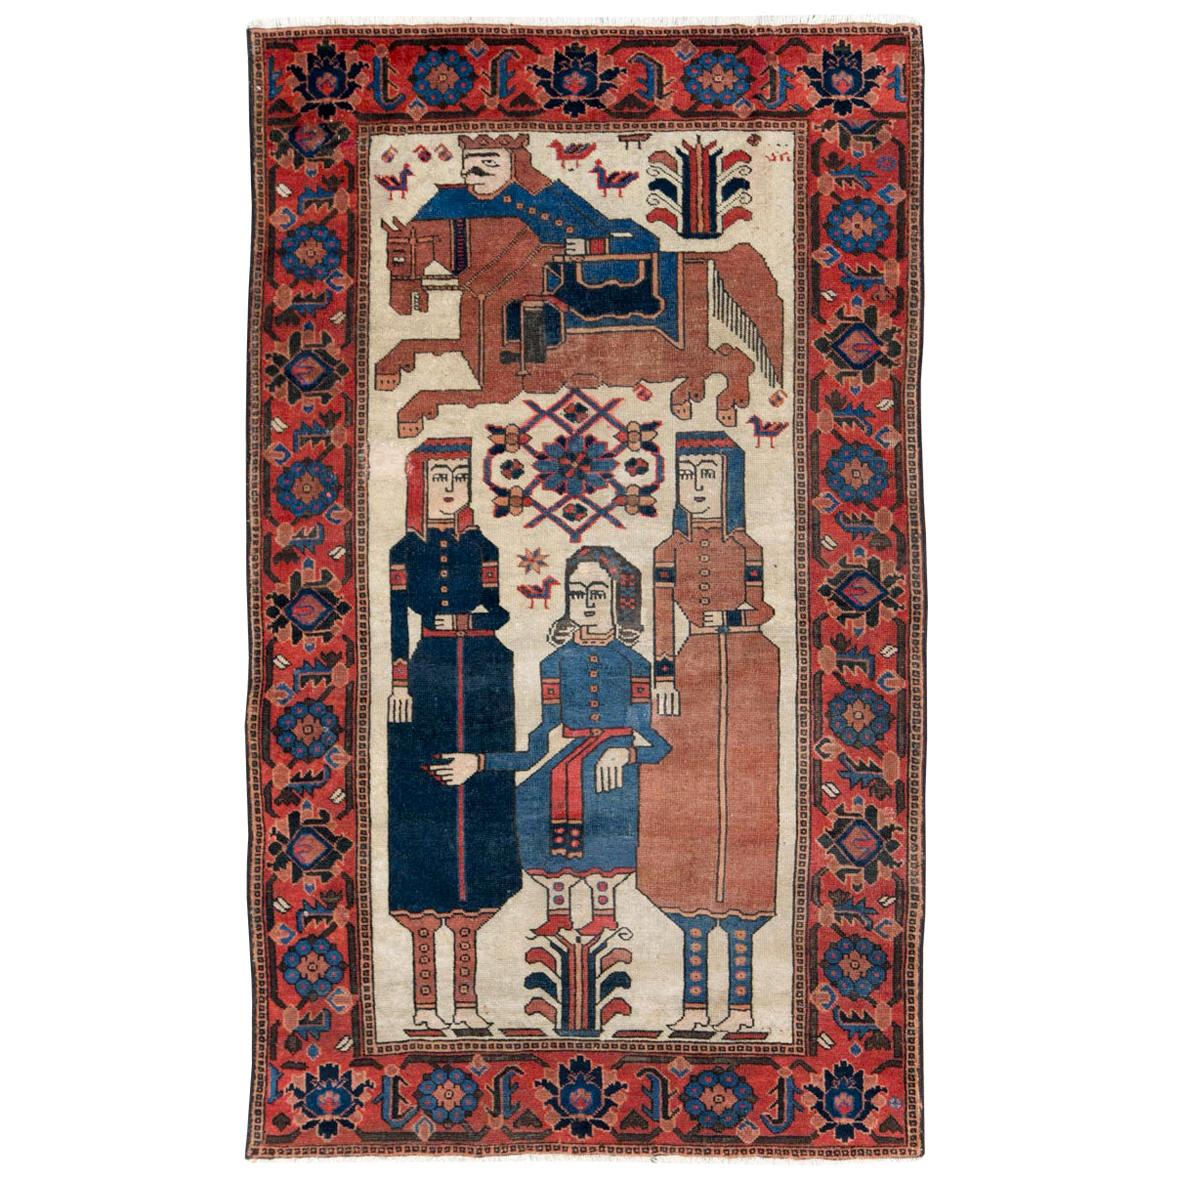 Handgefertigter persischer Kurd-Teppich mit Bildakzent aus dem frühen 20. Jahrhundert